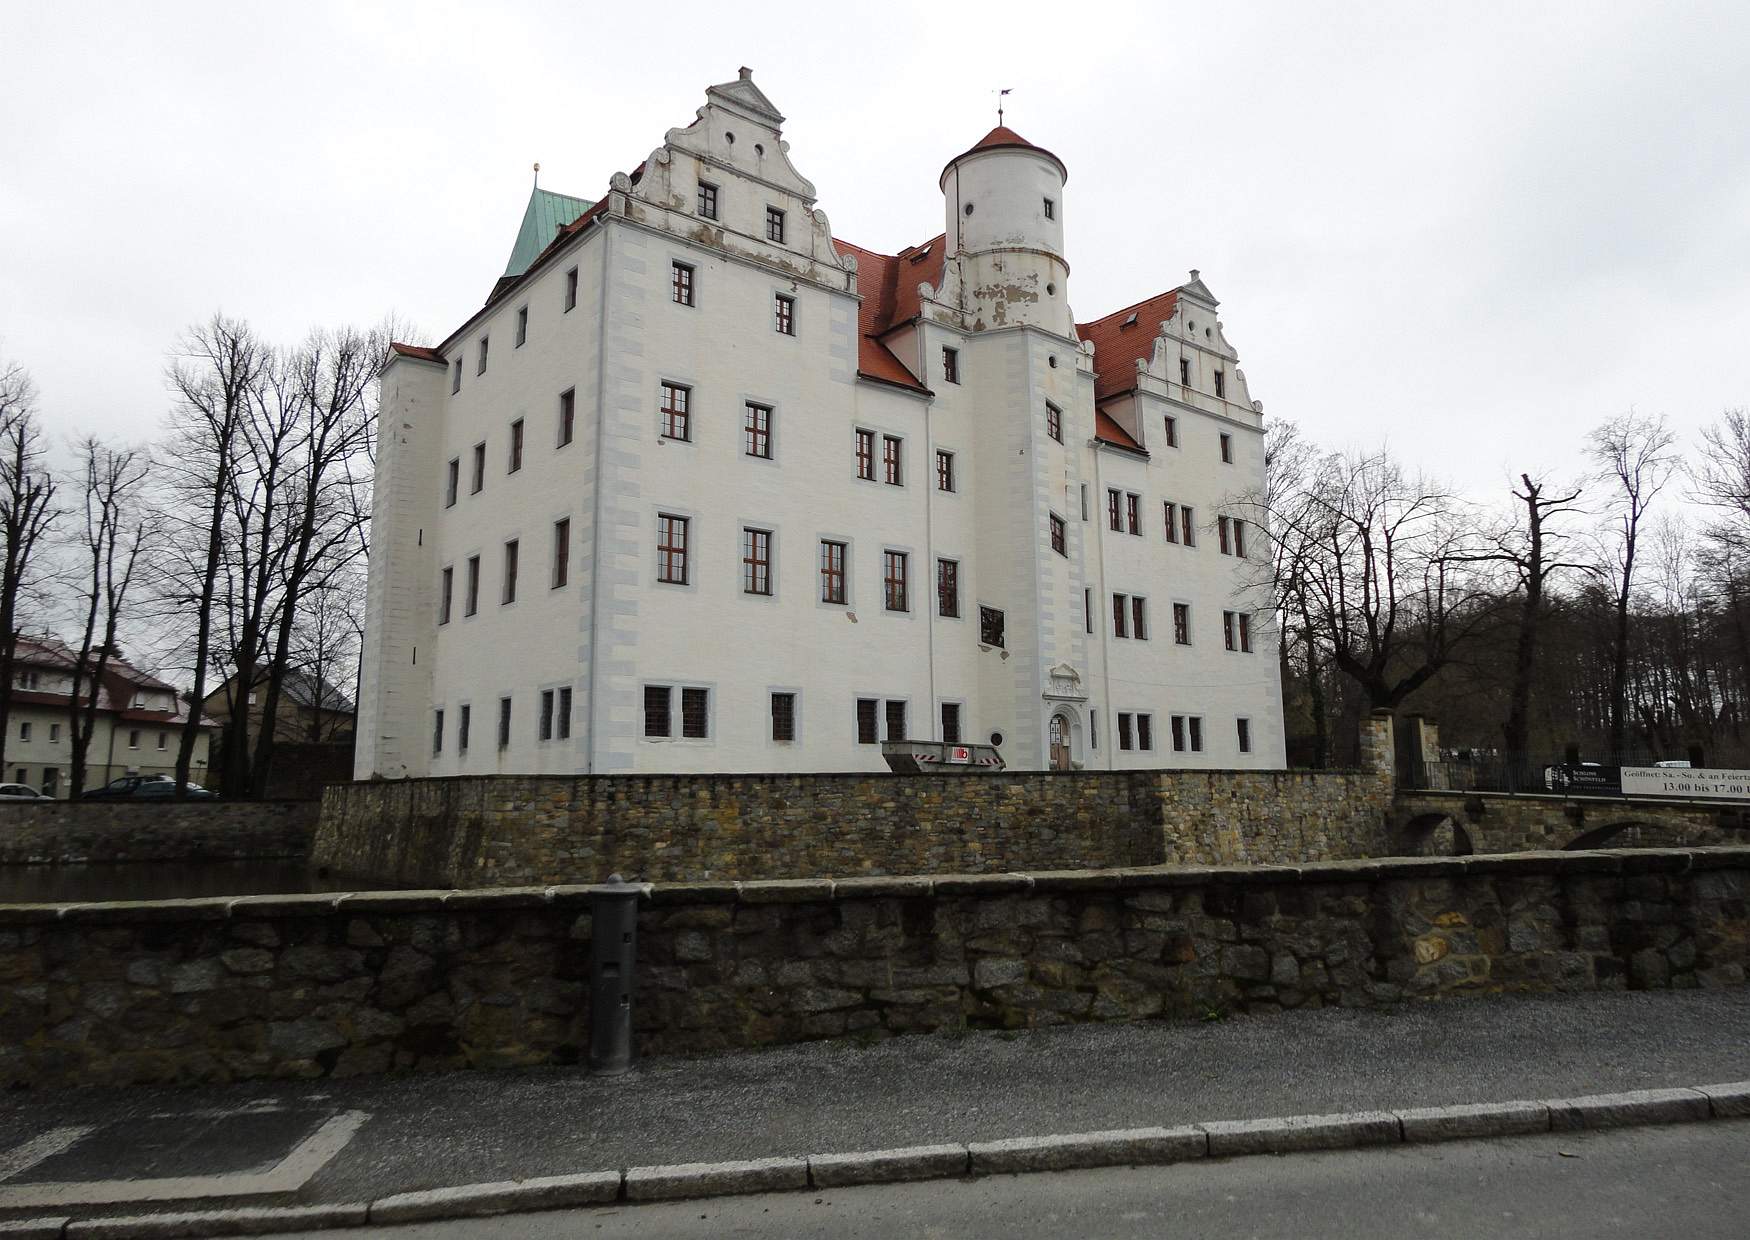 Wandern im Schönfelder Hochland, Schloss Schönfeld-Weißig